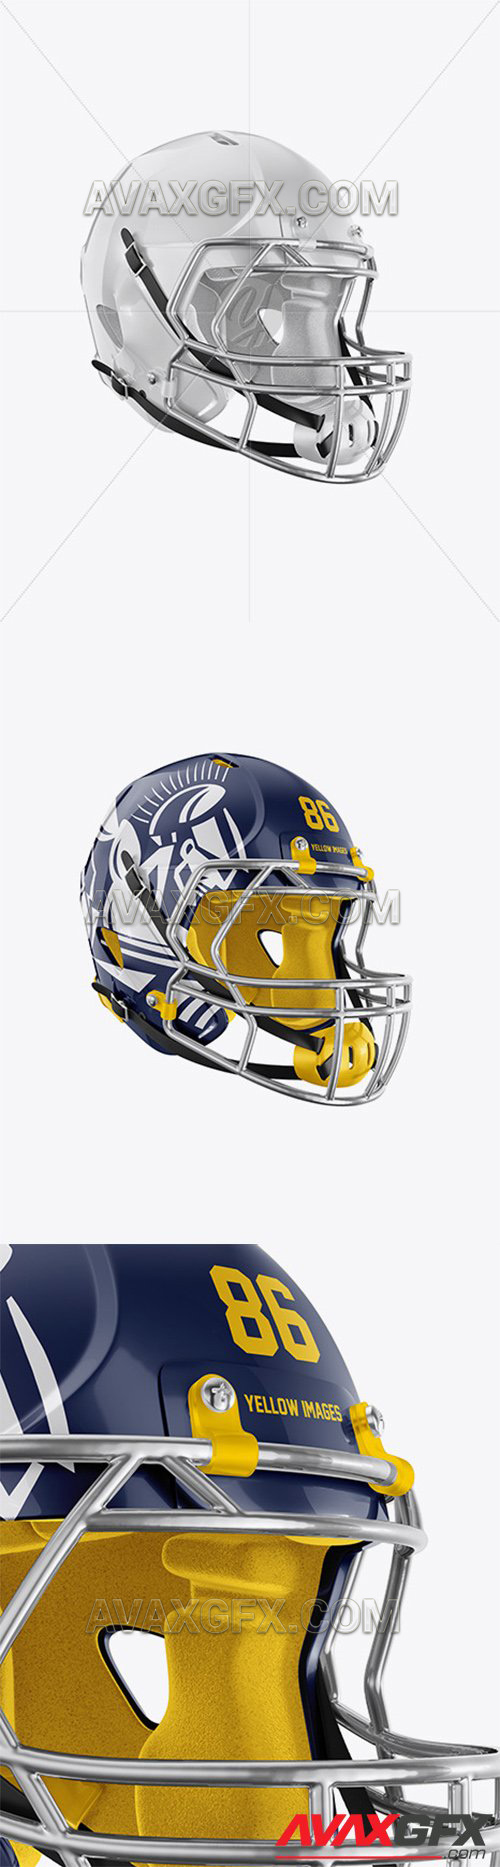 American Football Helmet Mockup 56796